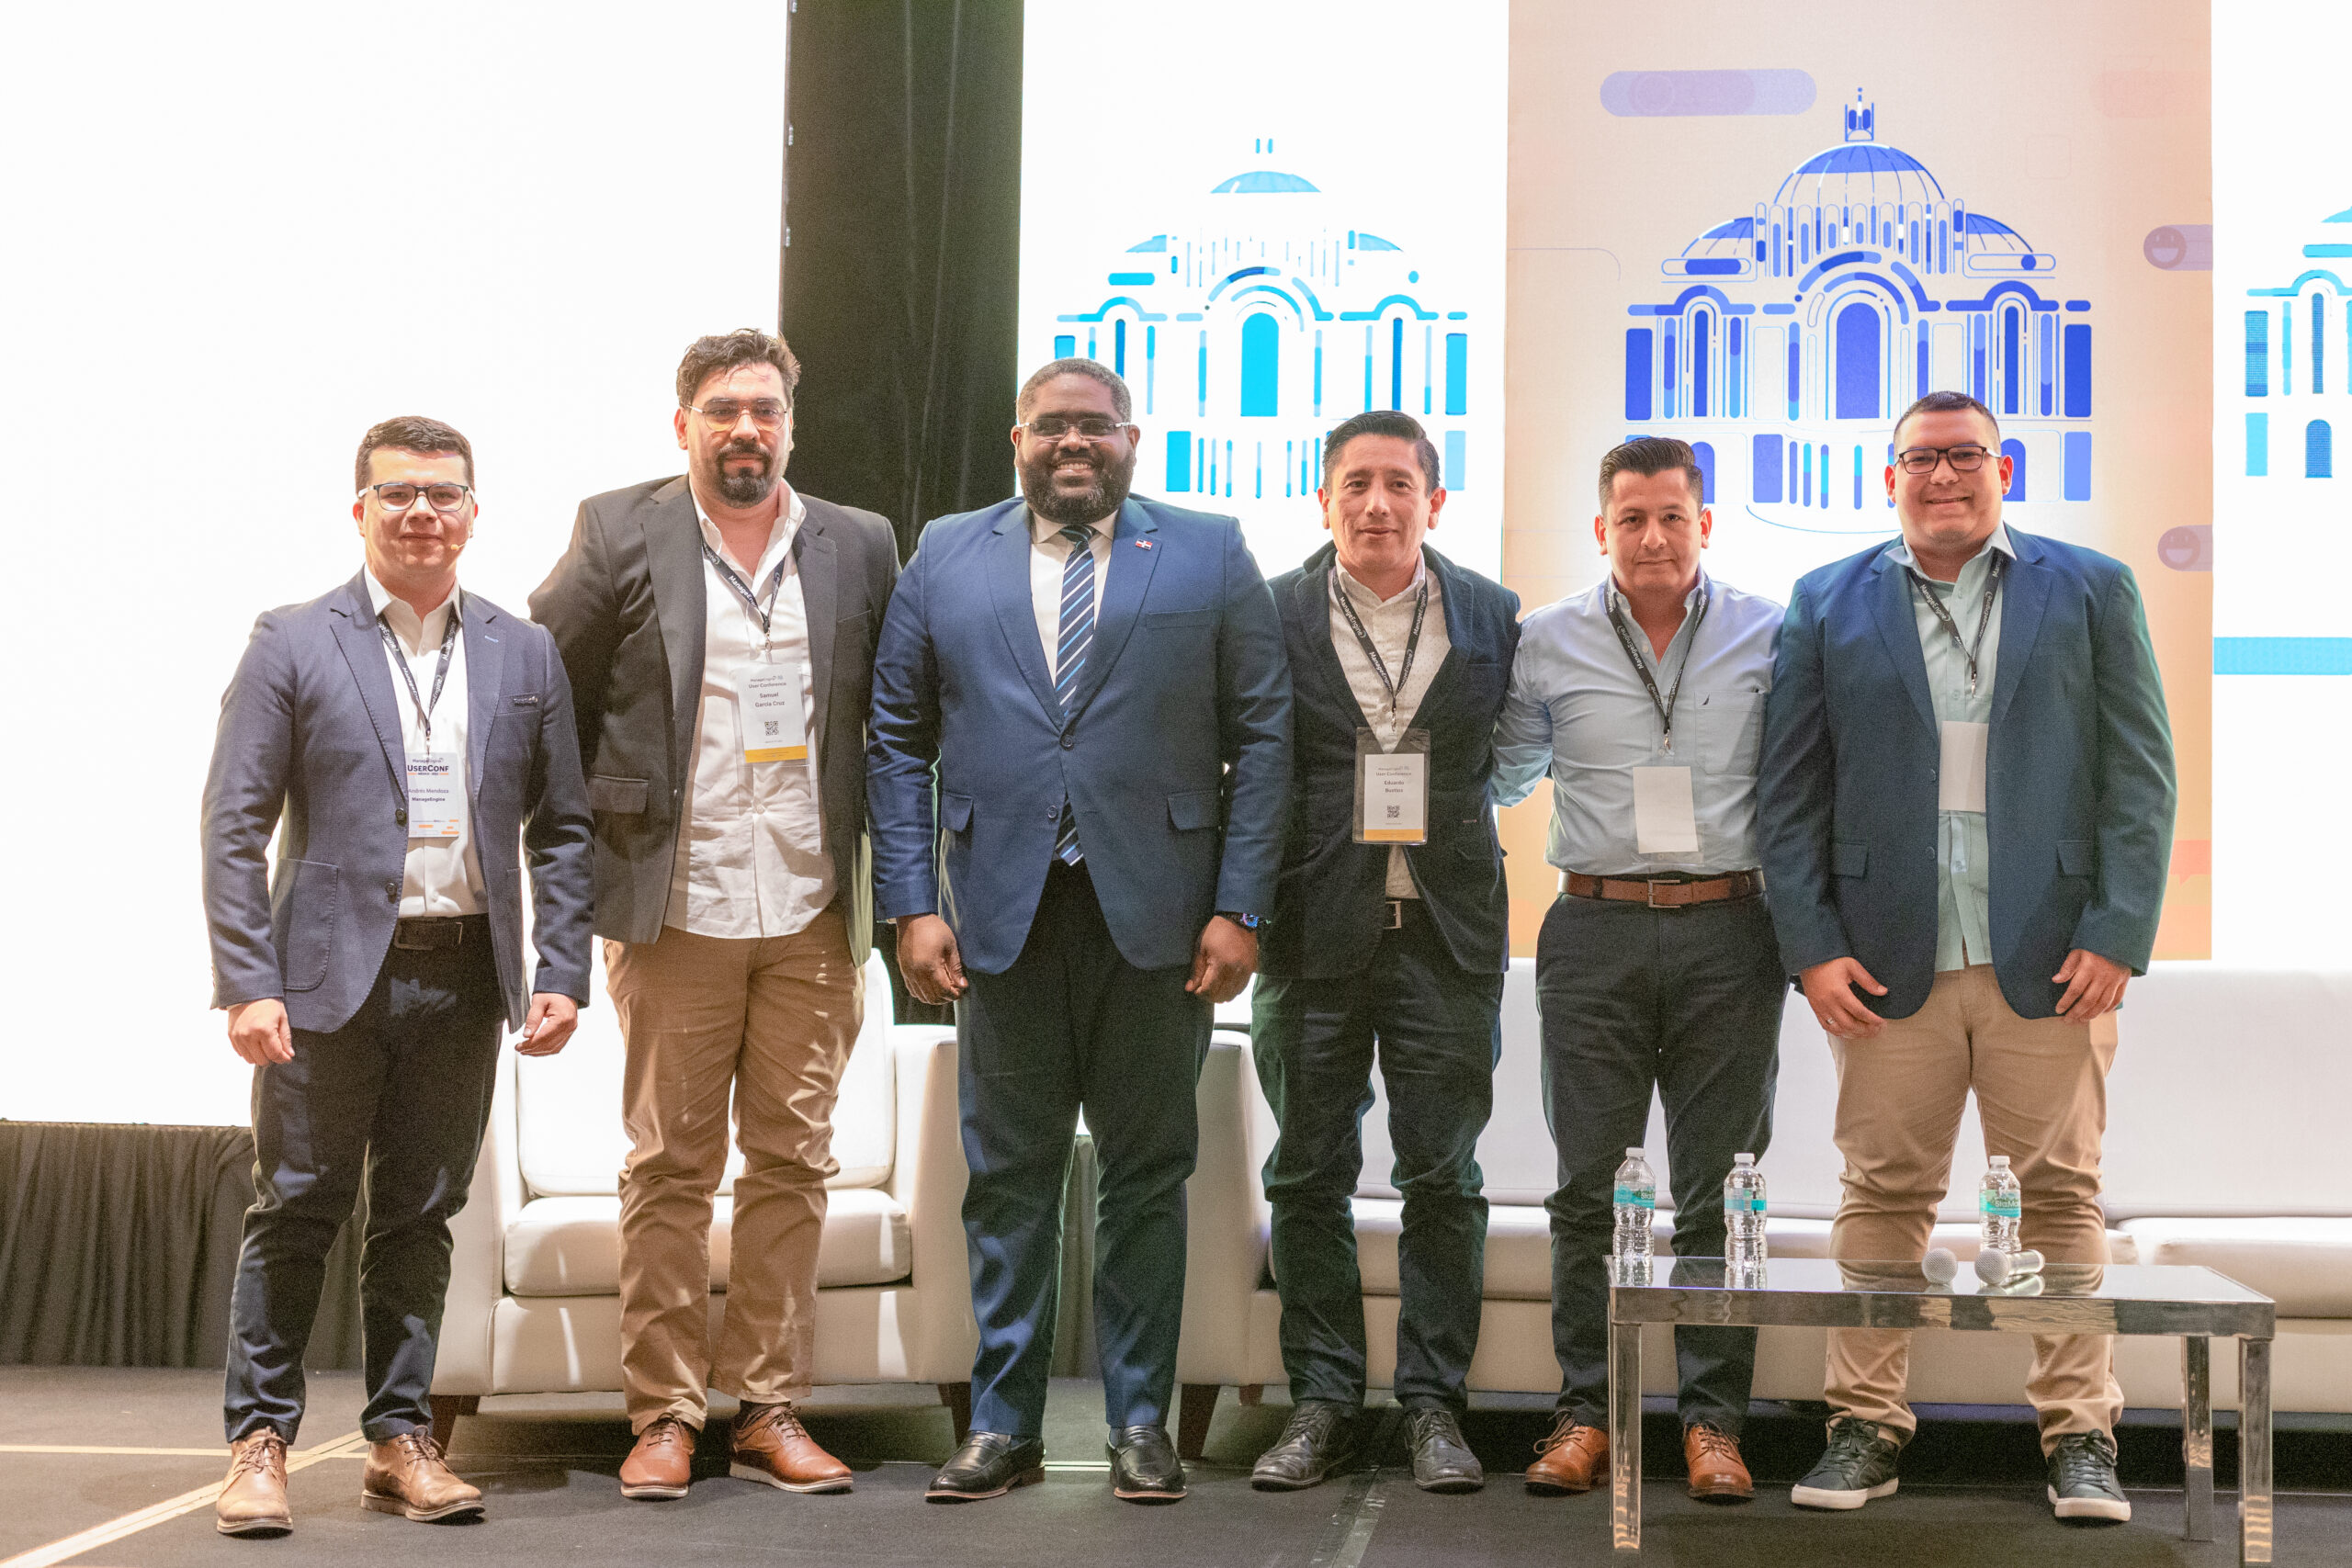 Viceministro de Agenda Digital participa en panel de liderazgo de TI en el User Conference de México